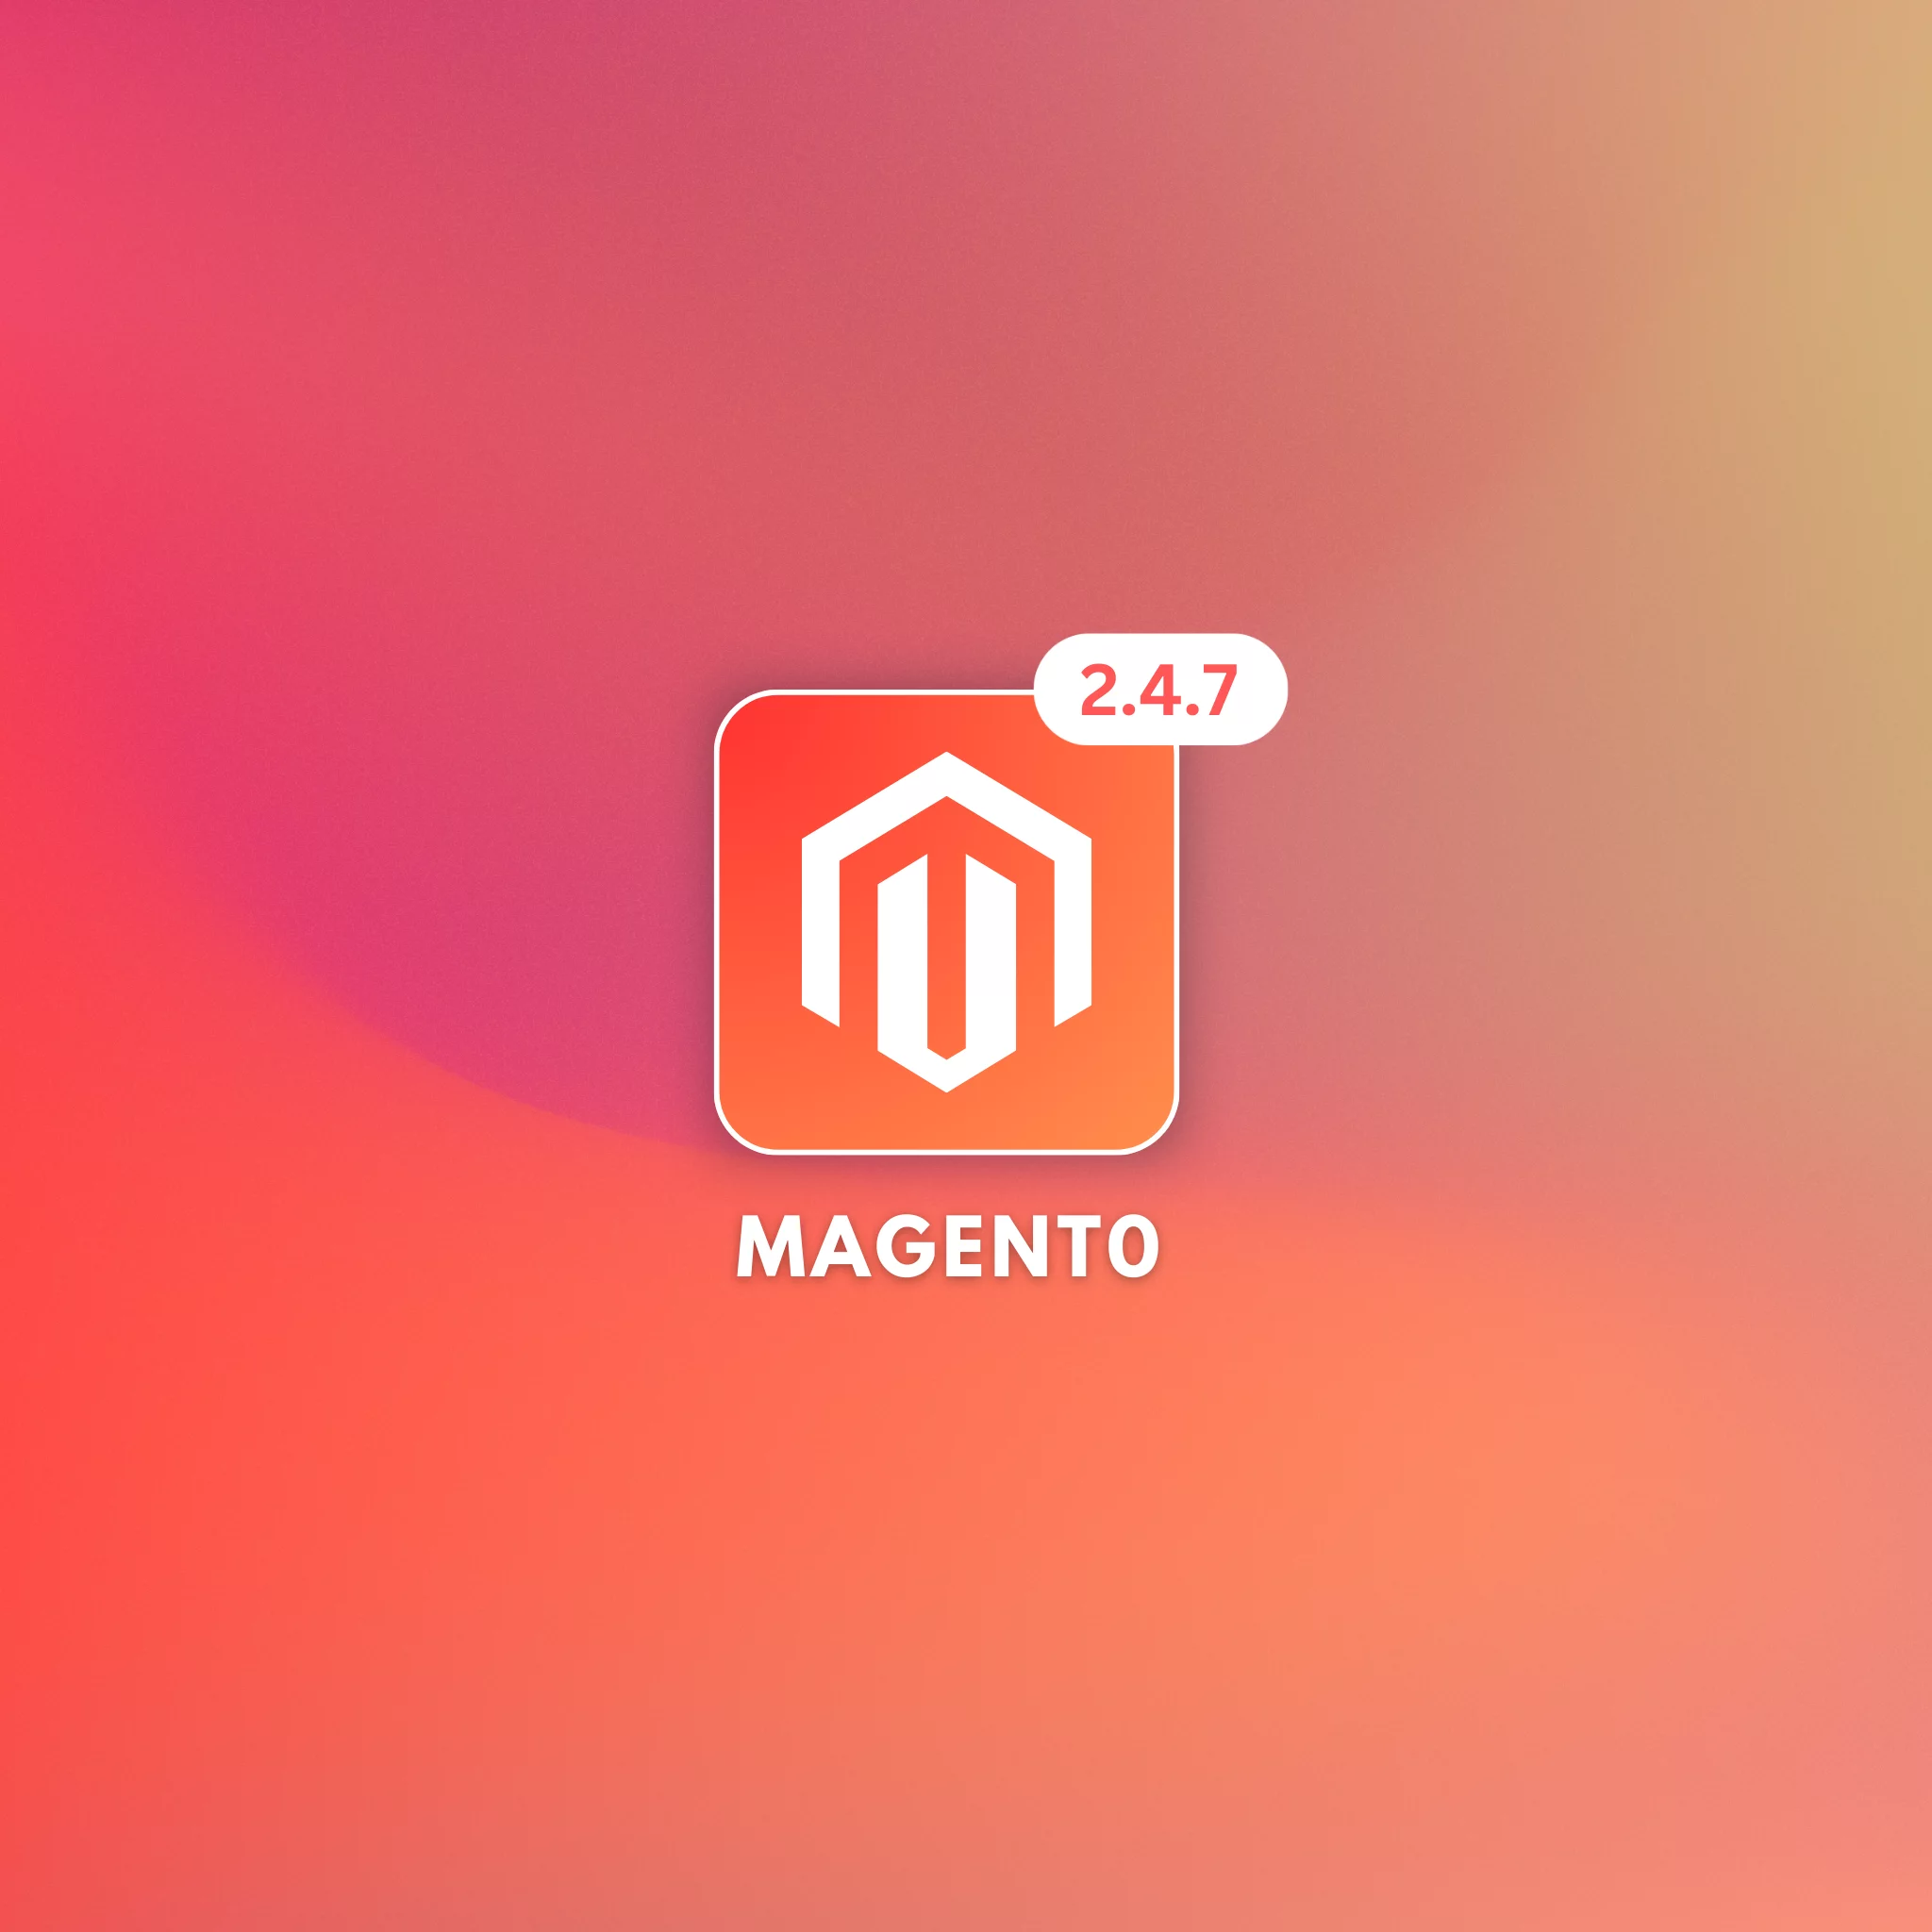 Magento 2.4.7 beta1 release, a new version of the Magento e-commerce platform